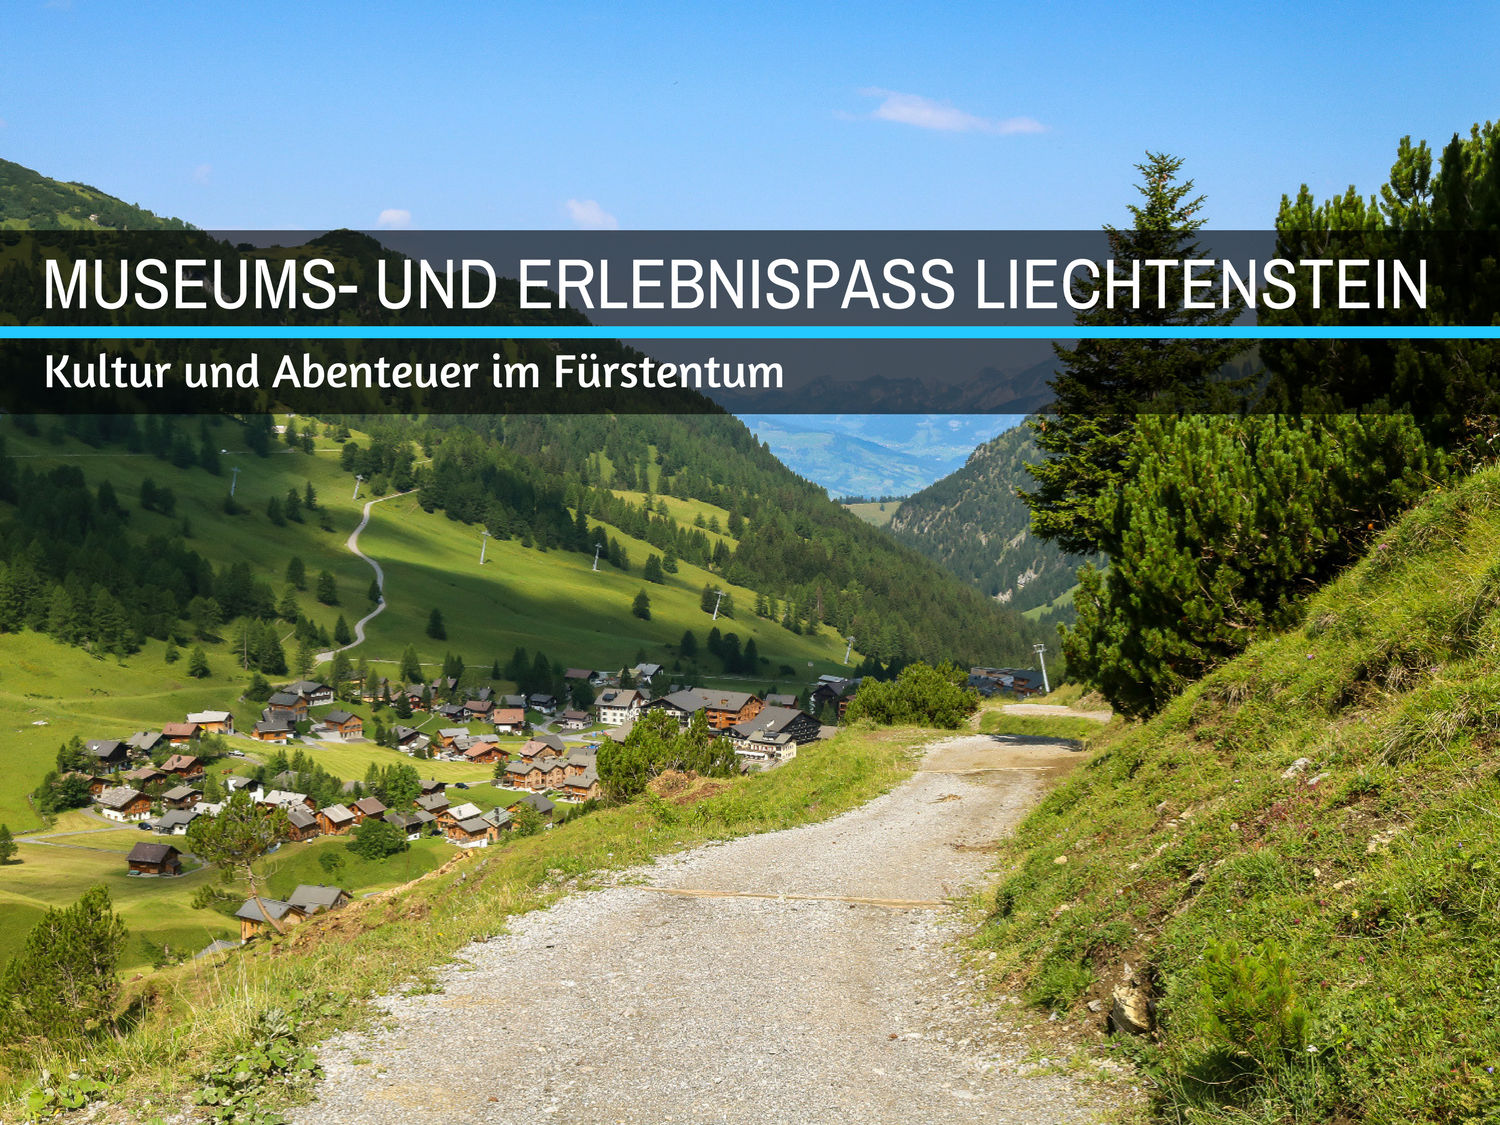 Museums- und Erlebnispass Liechtenstein